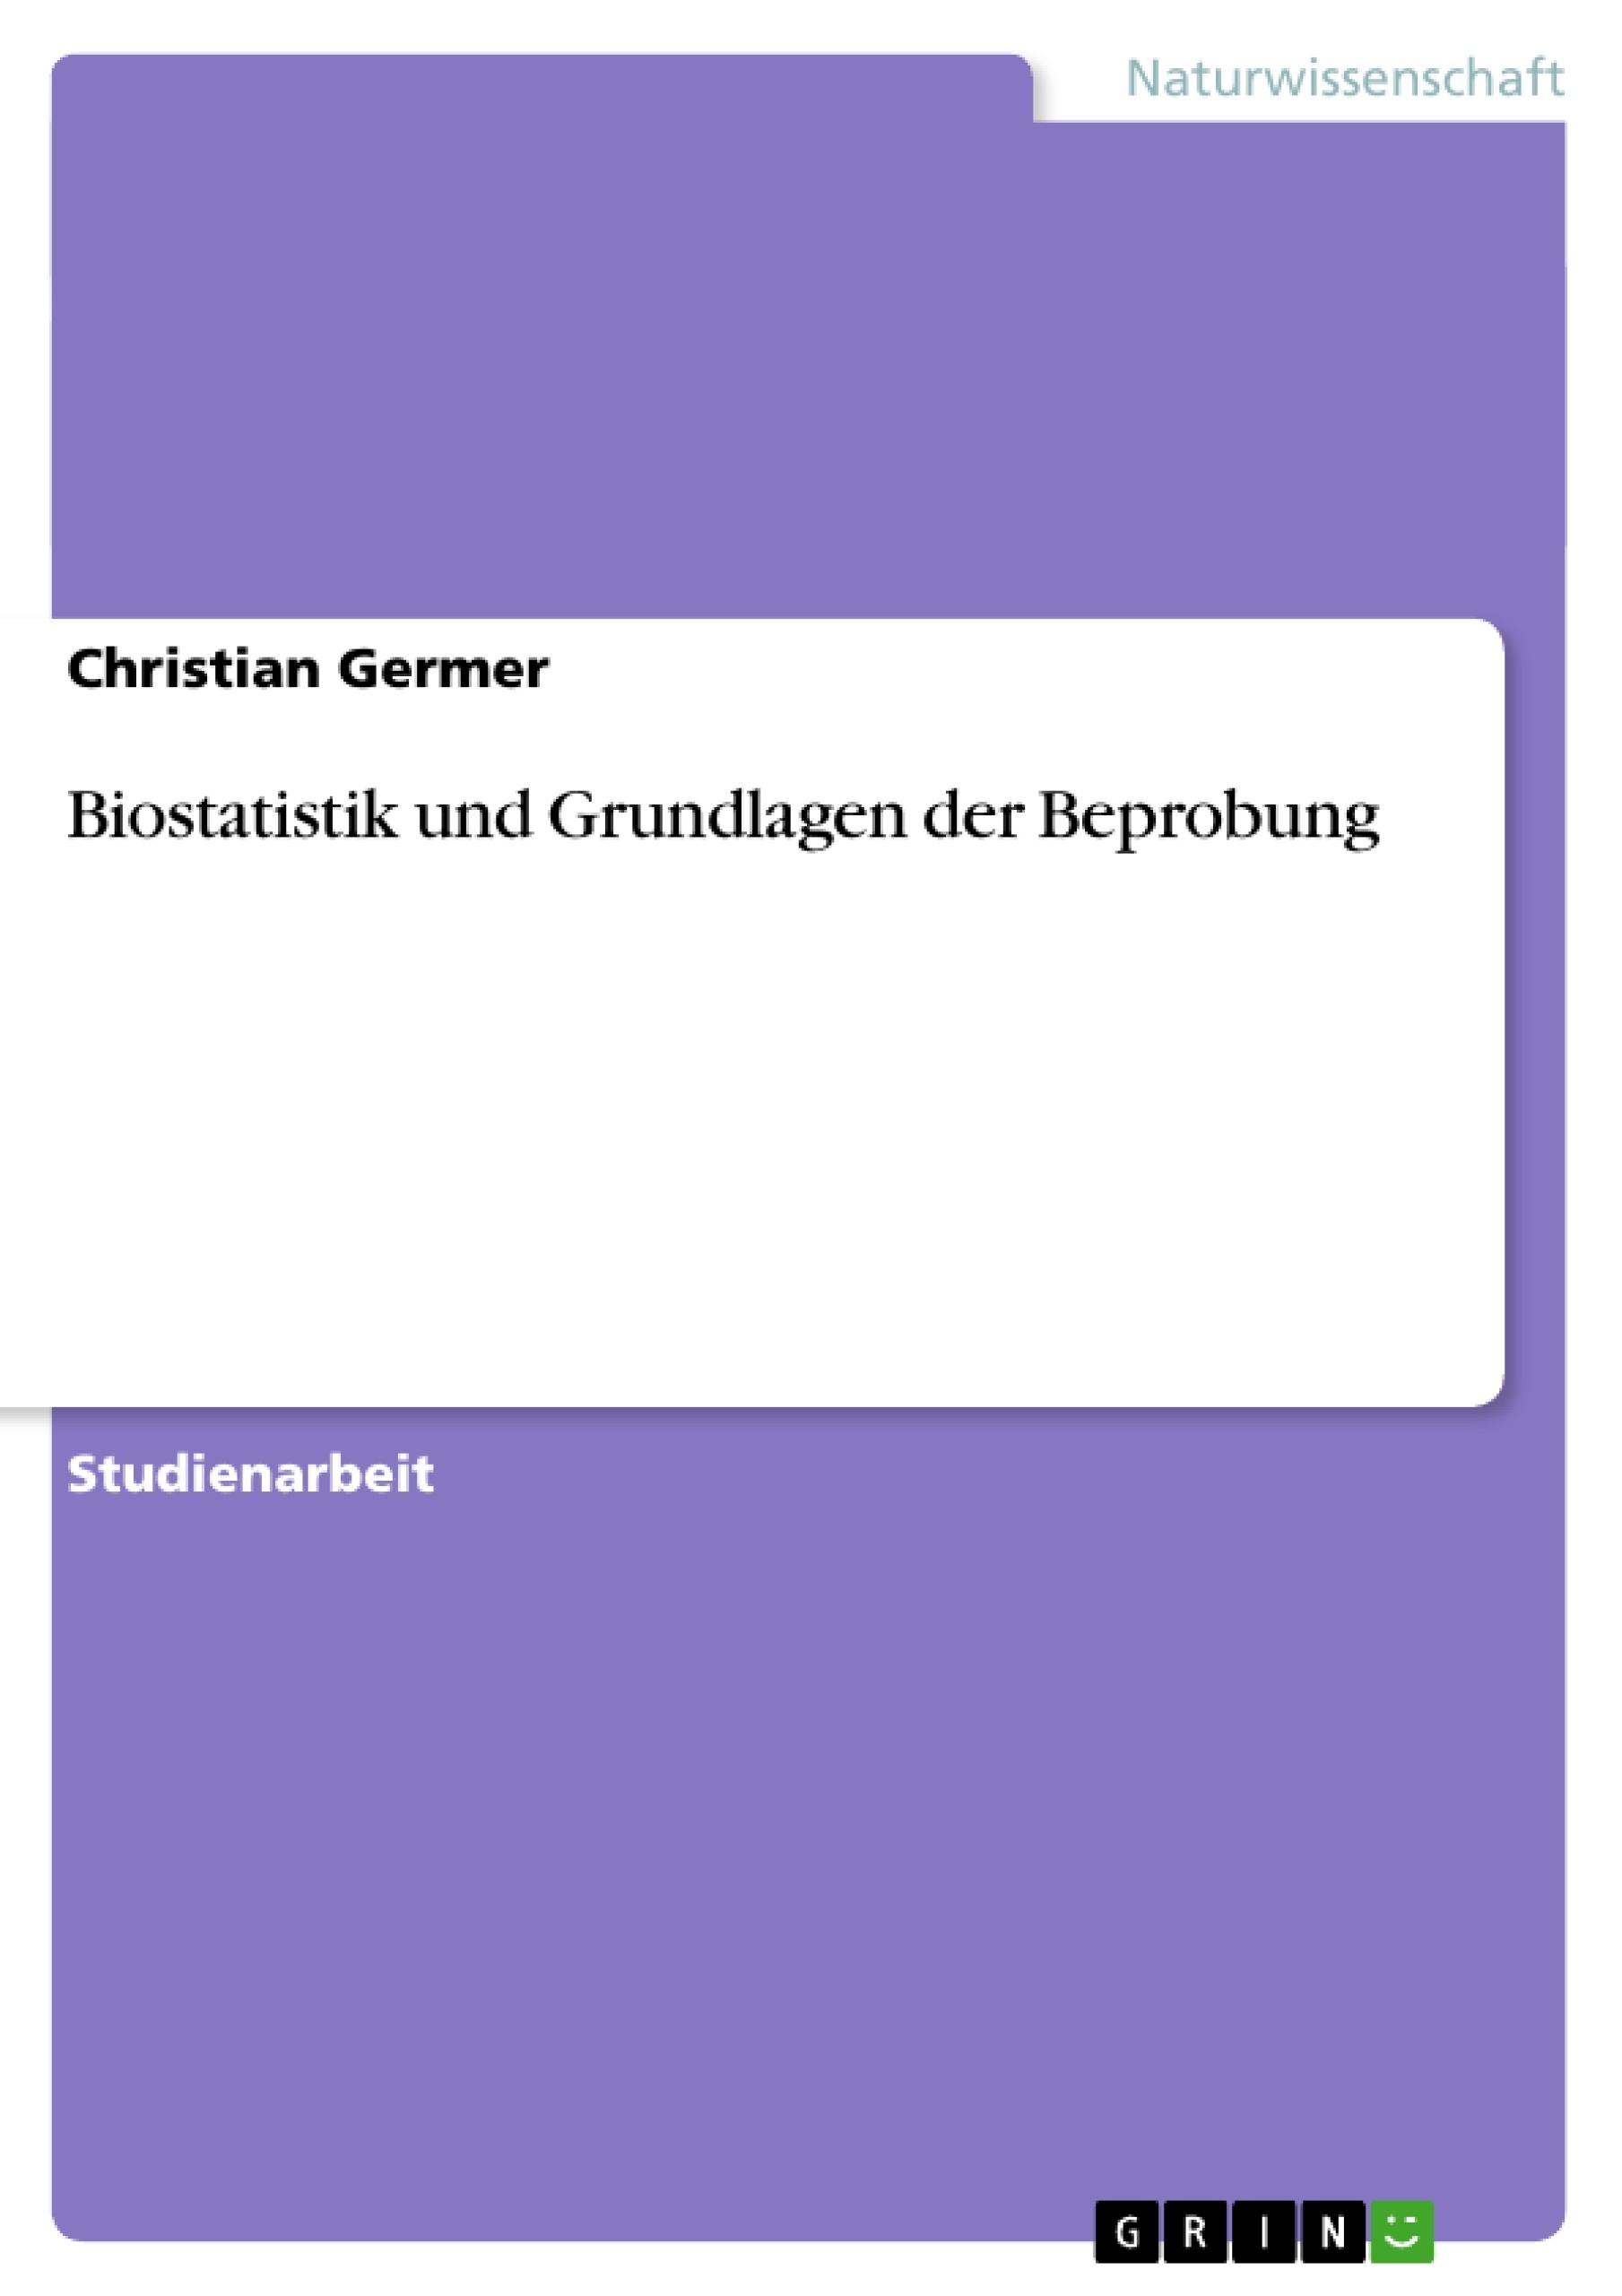 Title: Biostatistik und Grundlagen der Beprobung